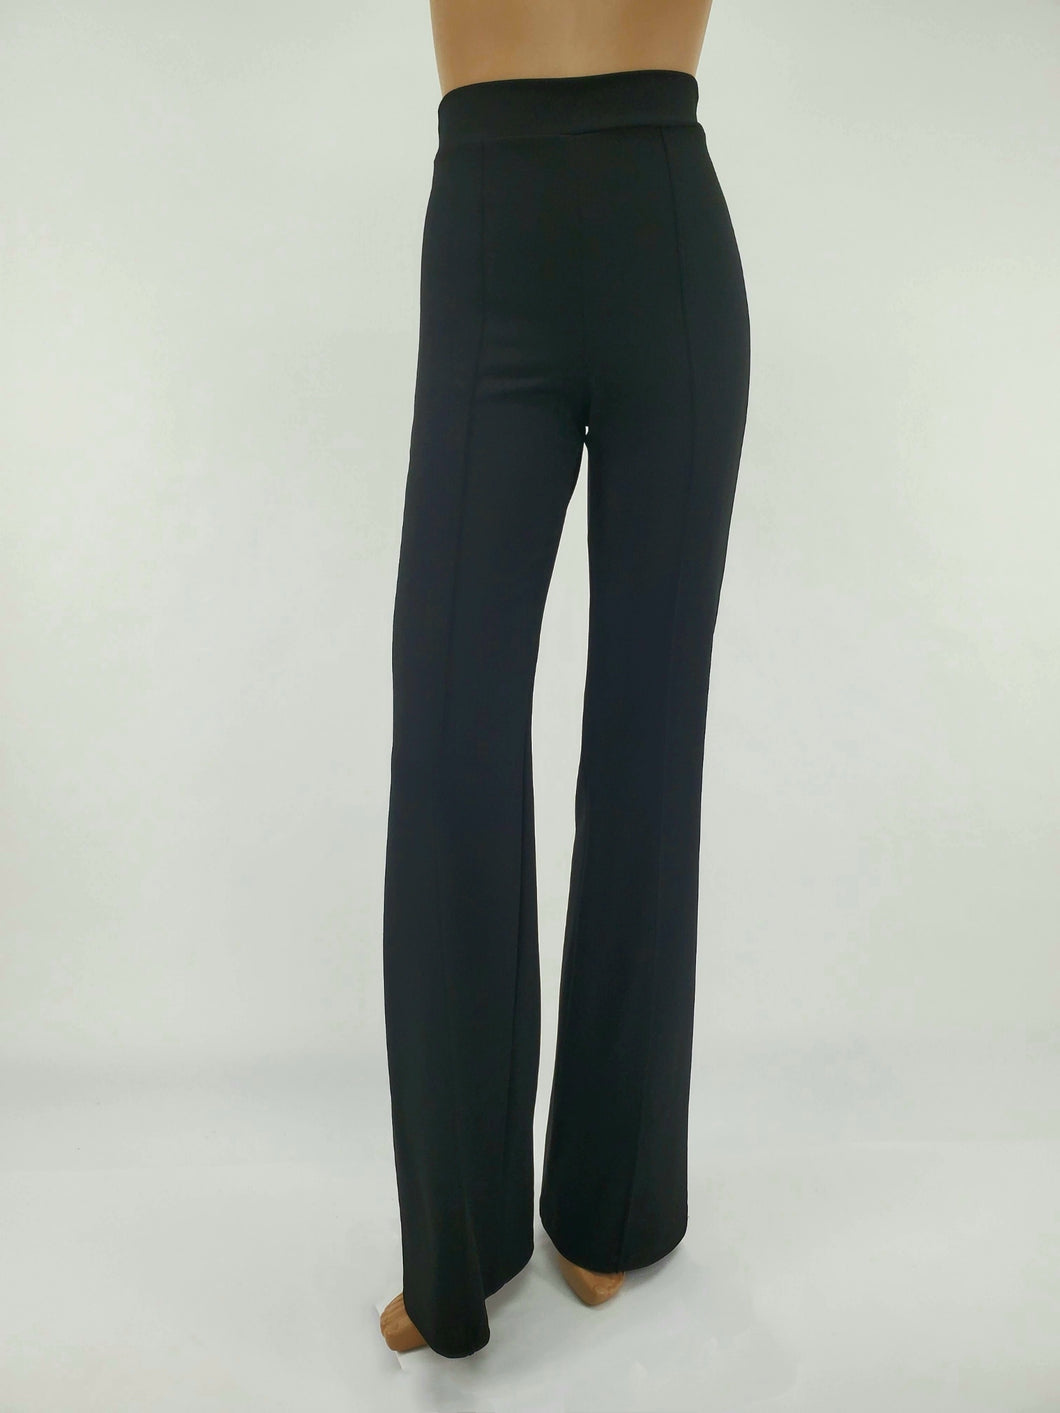 High Waist Front Pintuck Pants with Zipper (Black)